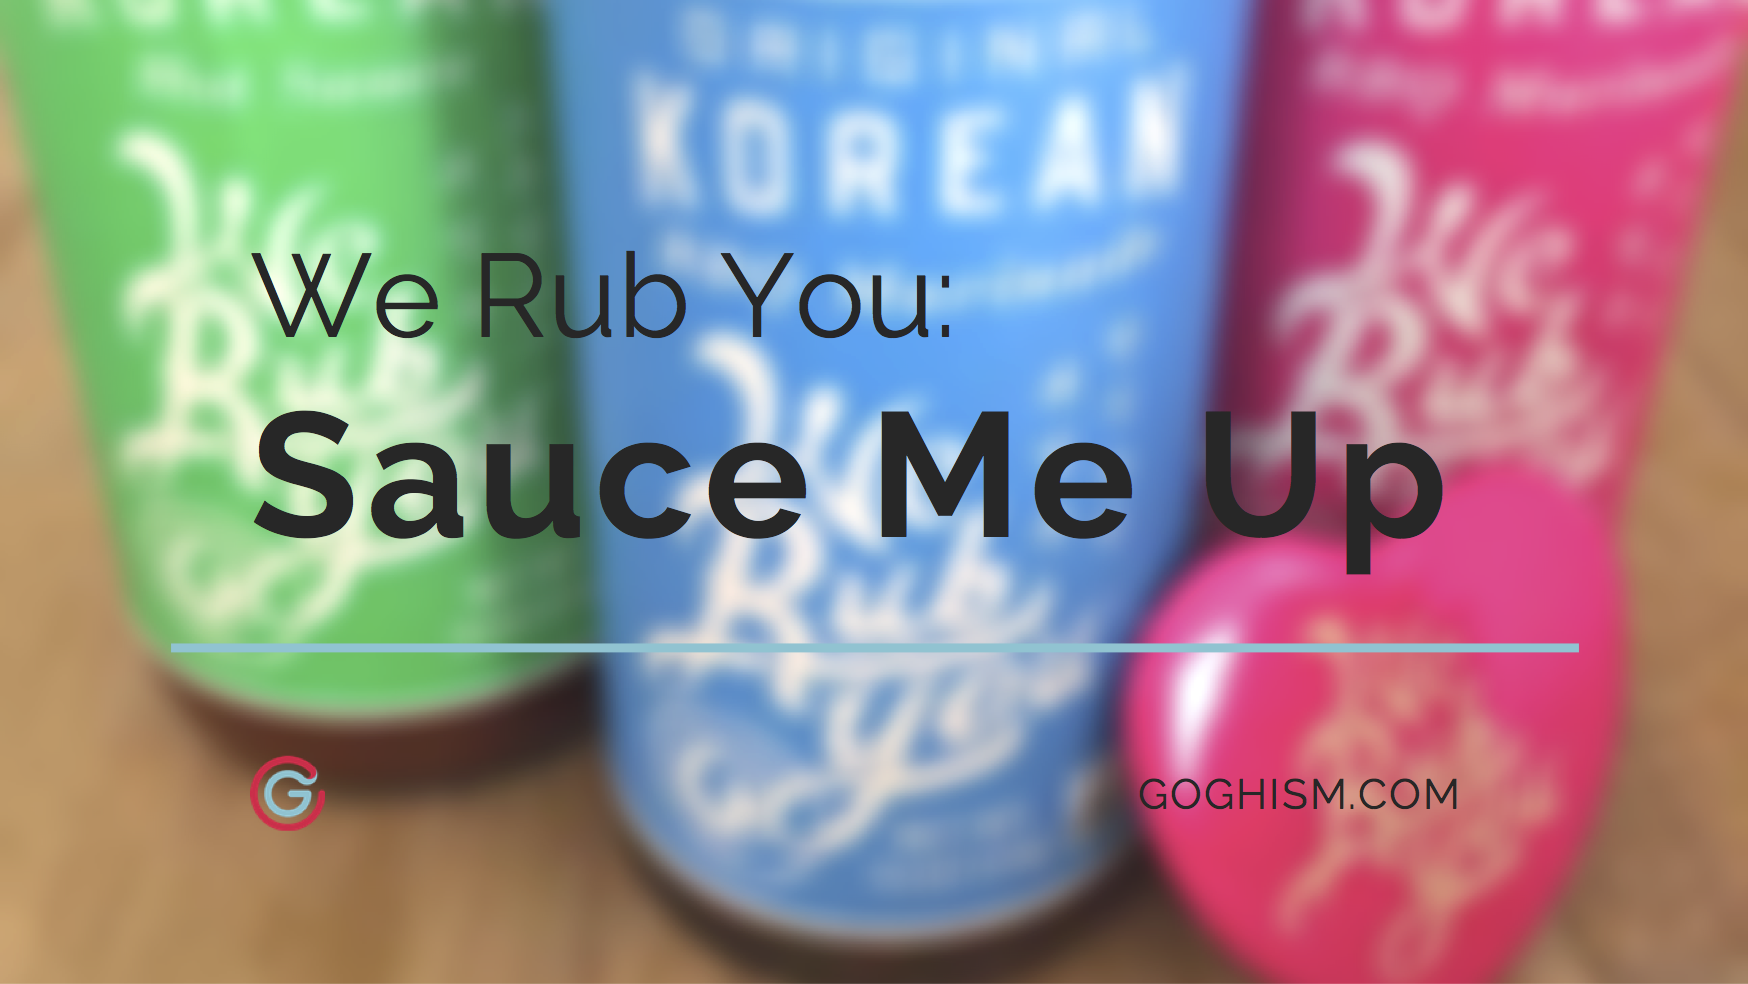 We Rub You: Sauce Me Up